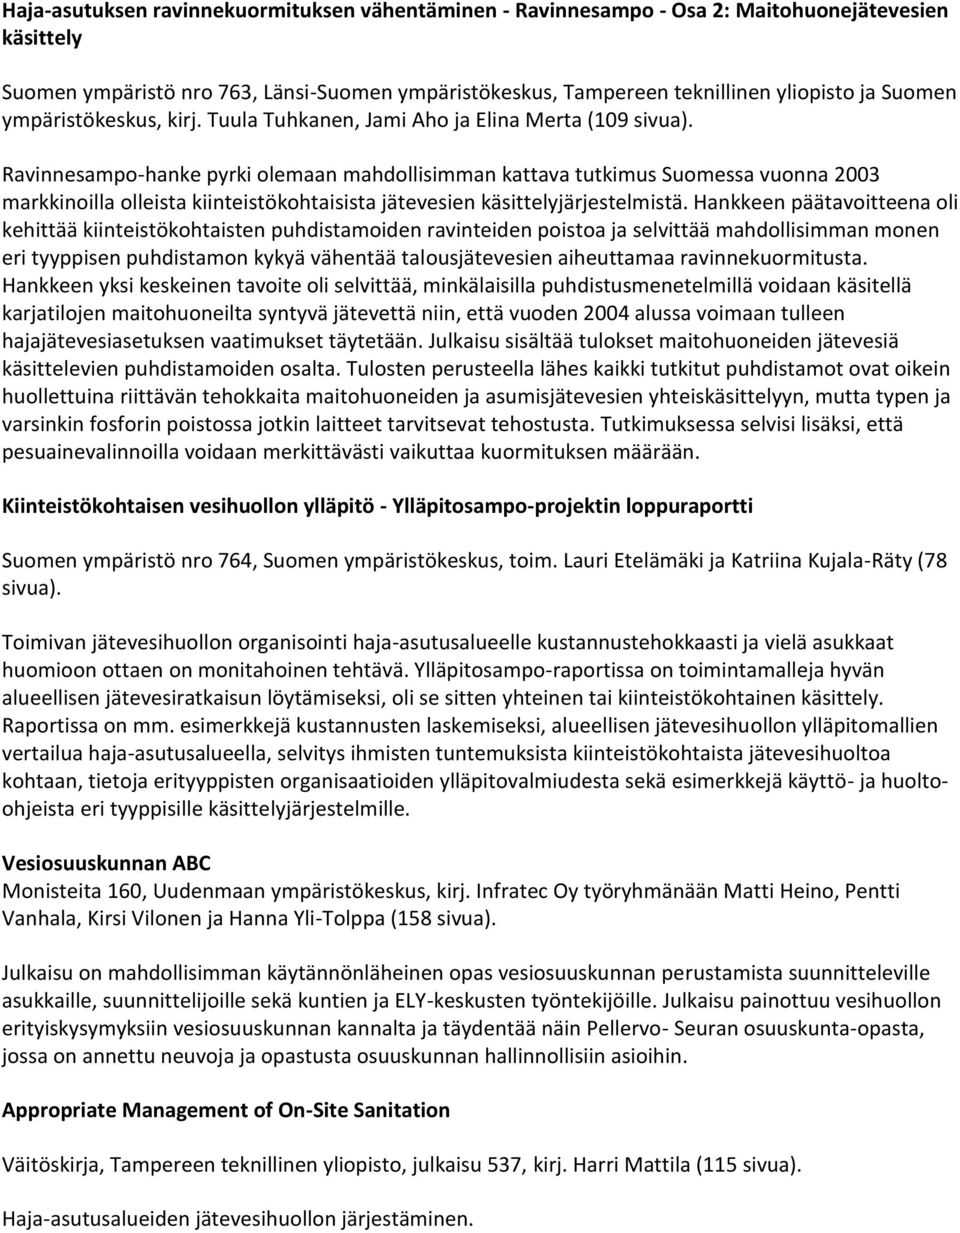 Ravinnesampo-hanke pyrki olemaan mahdollisimman kattava tutkimus Suomessa vuonna 2003 markkinoilla olleista kiinteistökohtaisista jätevesien käsittelyjärjestelmistä.